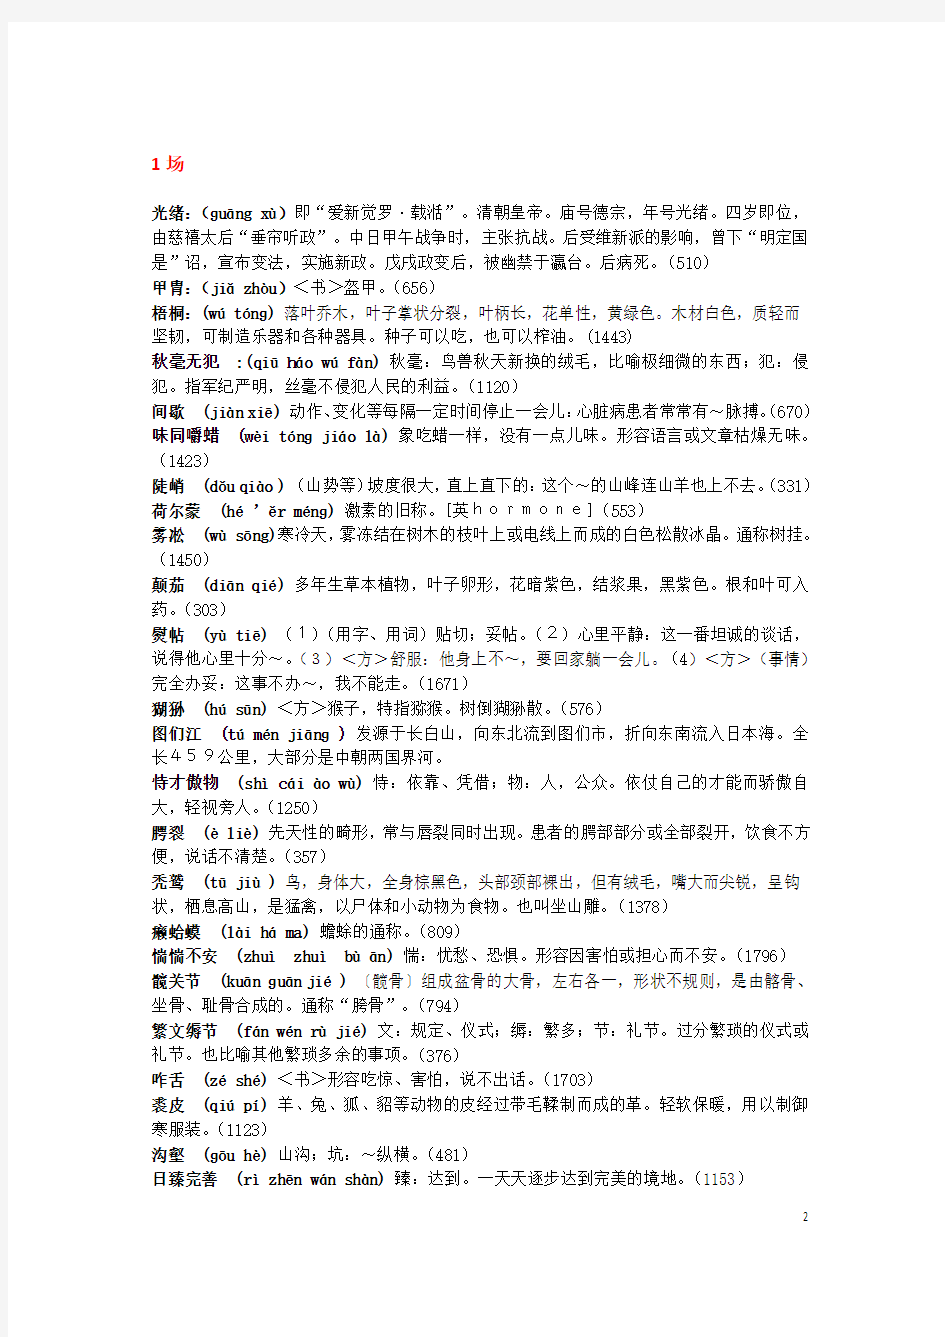 2013中国汉字听写大会(1-13期)全部词语+拼音+解释